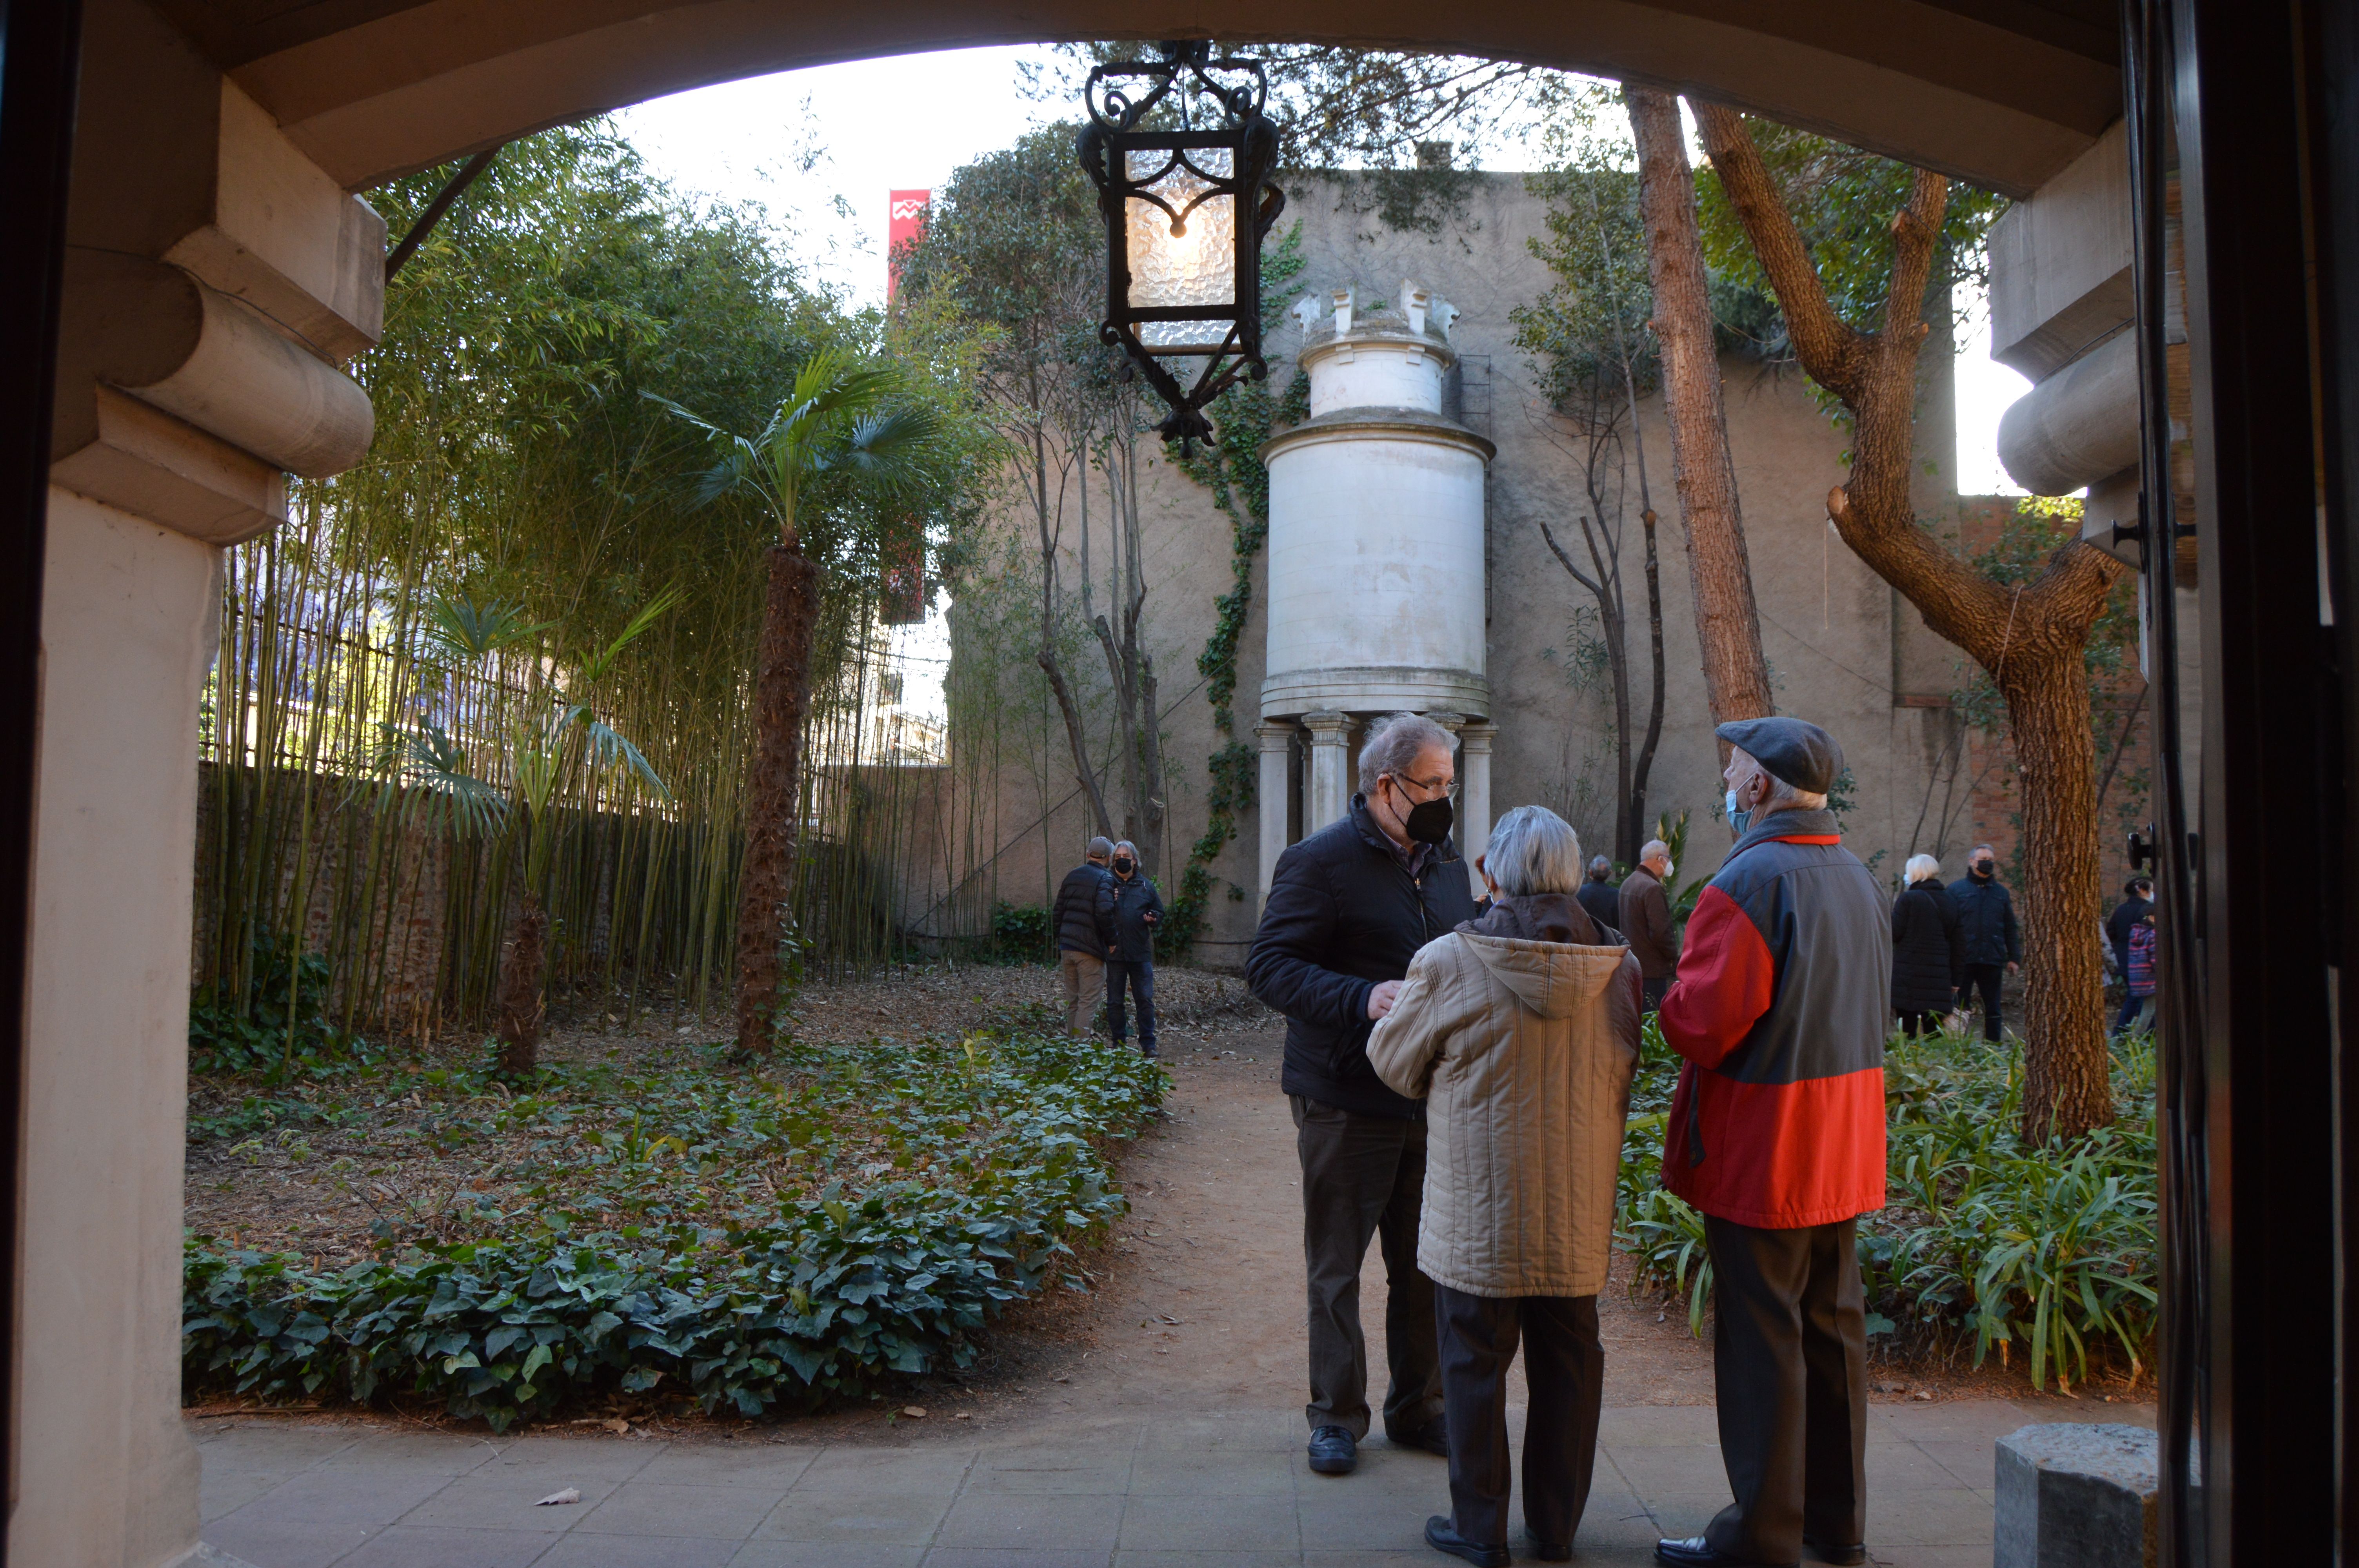 Portes obertes del jardí de la Torre Can Llopis. FOTO: Nora Muñoz Otero